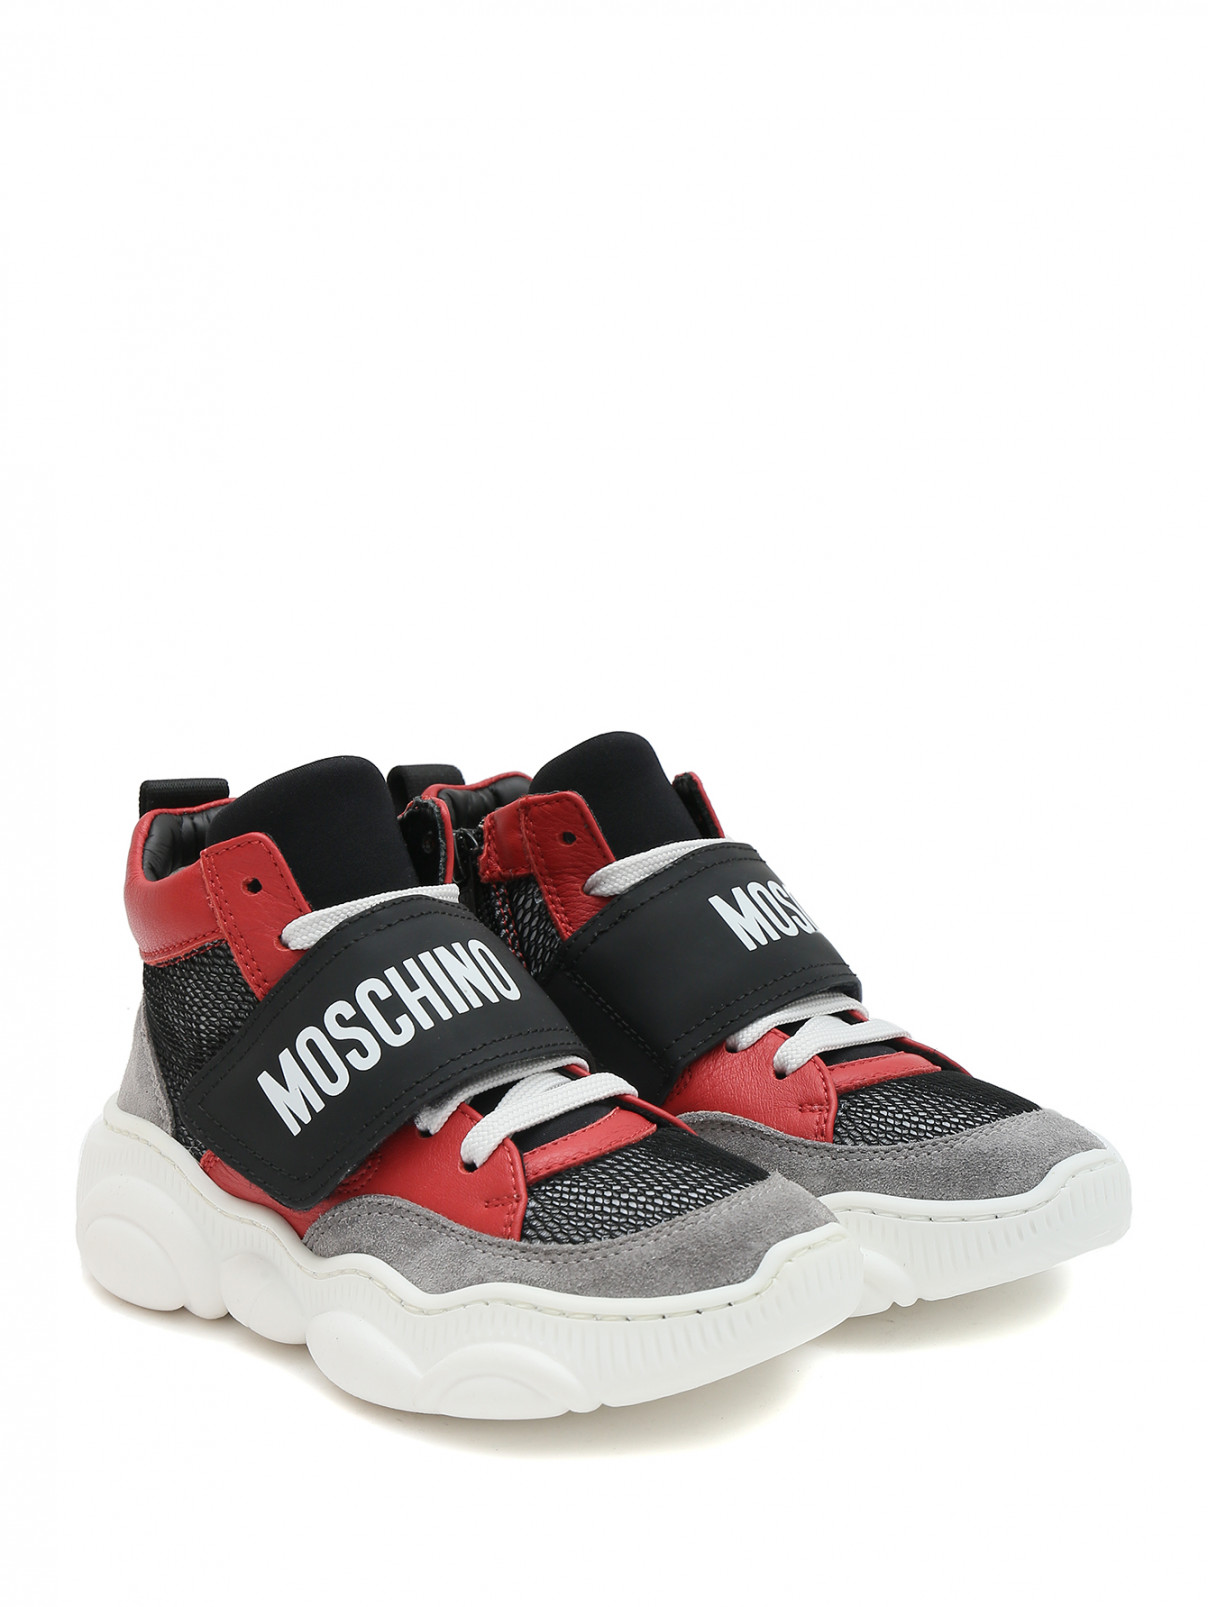 Высокие ботинки из кожи и сетки Moschino  –  Общий вид  – Цвет:  Серый